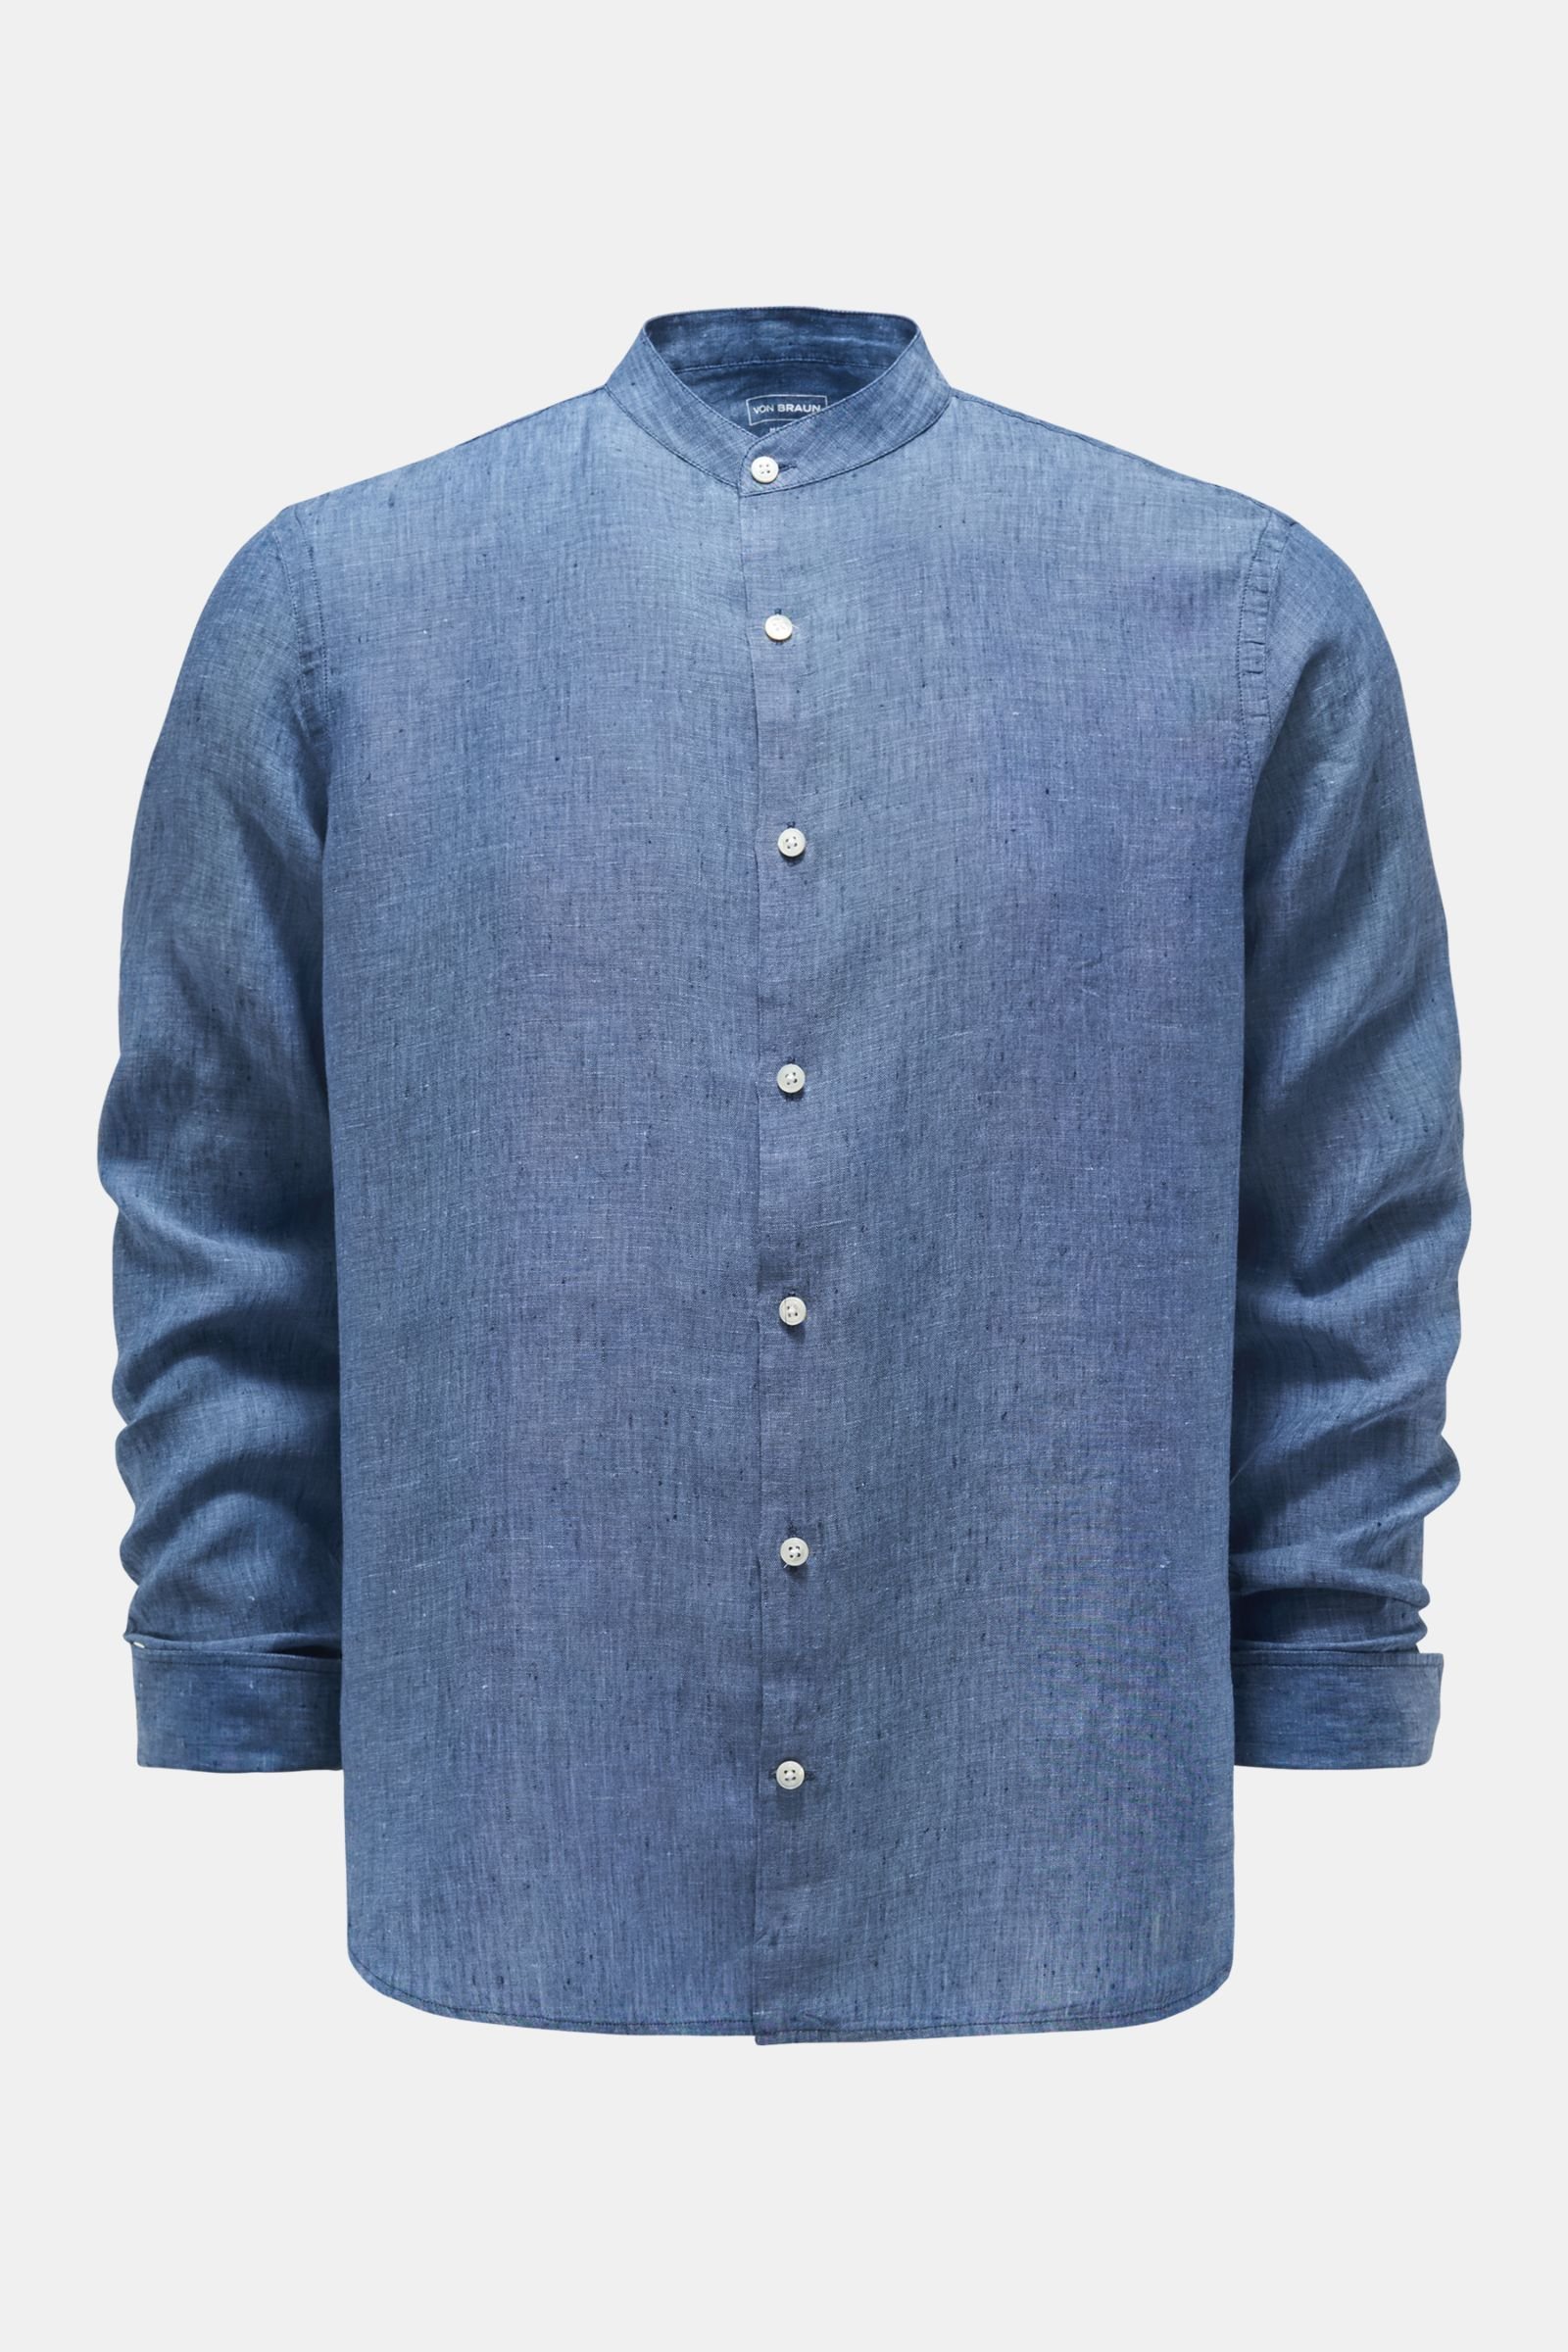 Linen shirt grandad collar grey-blue